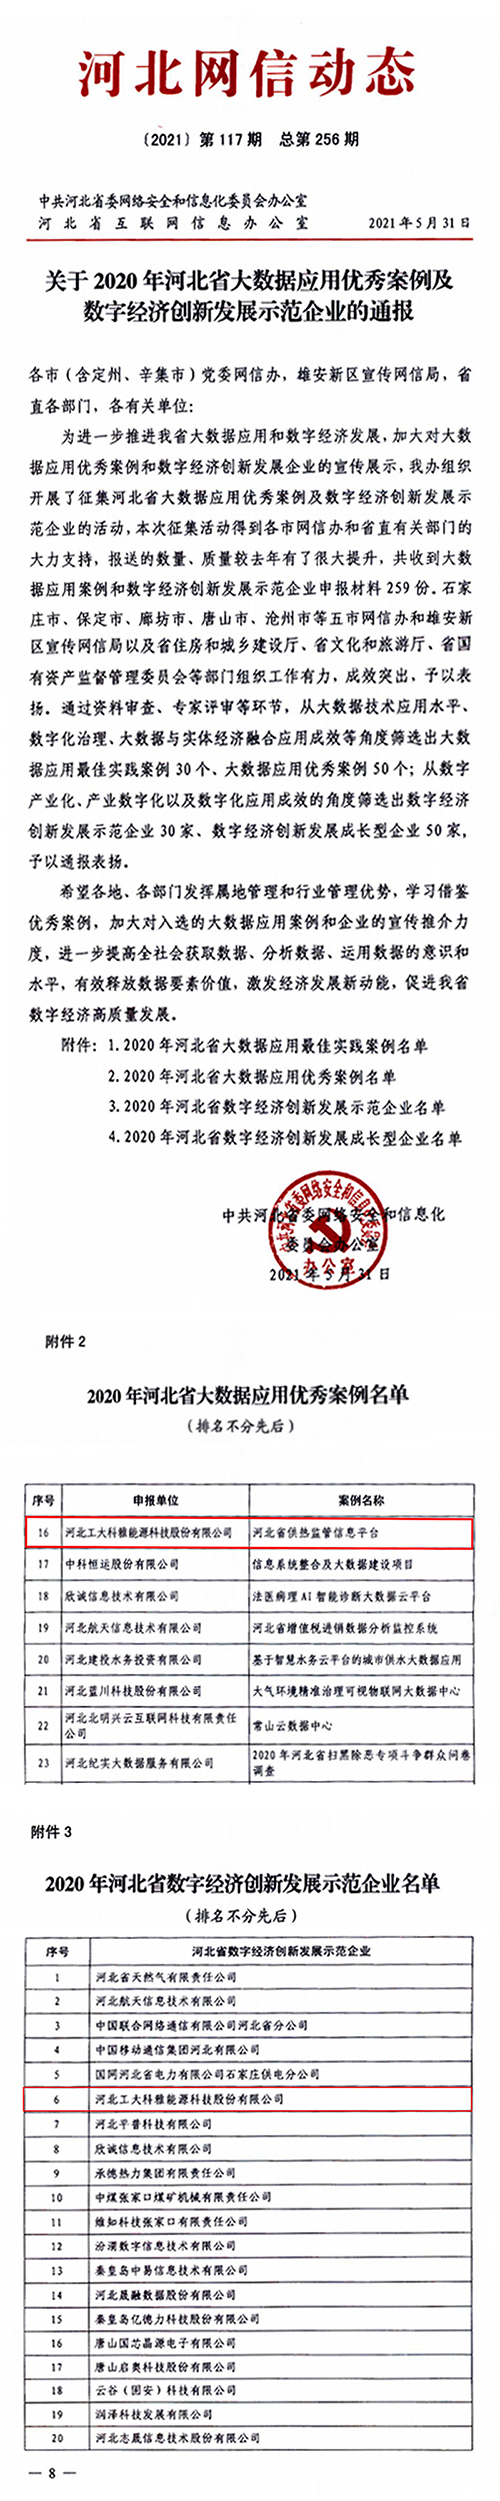 工大科雅入选2020年河北省数字经济创新发展示范企业(图1)